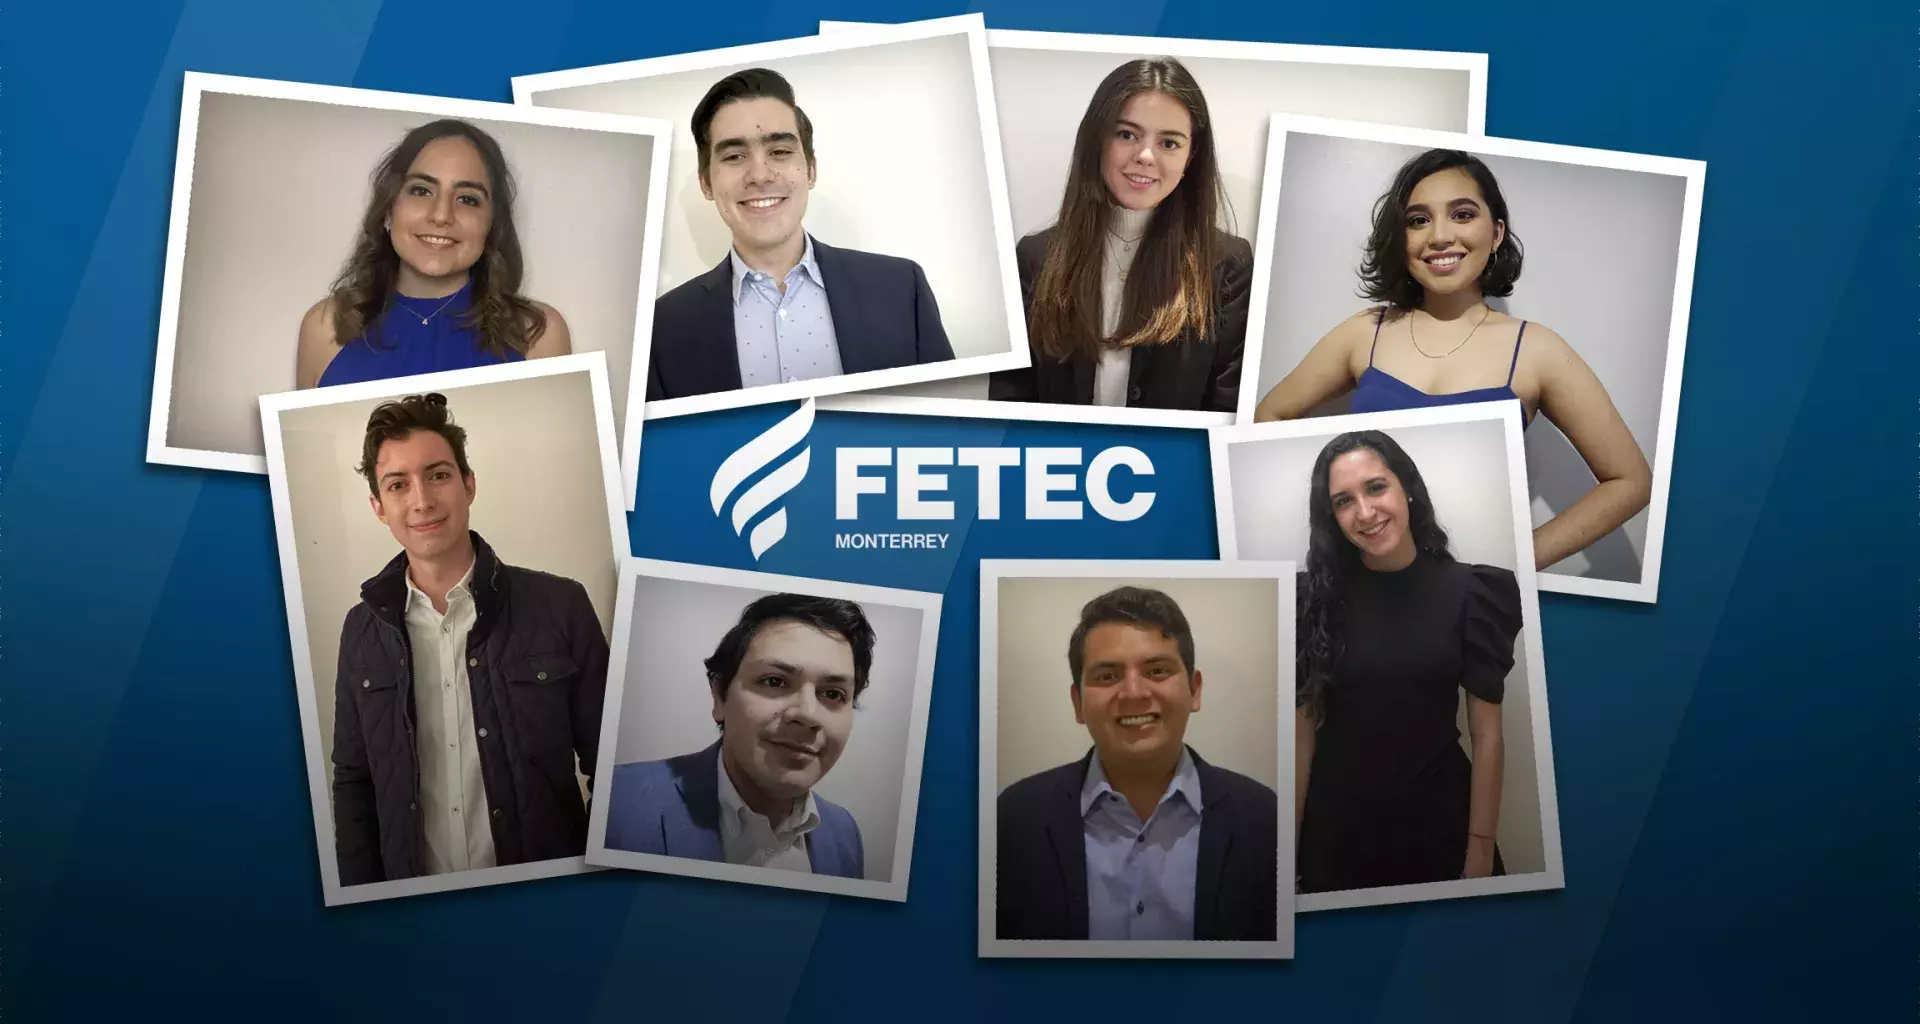 ¡Unidad estudiantil! Conoce a los nuevos integrantes de la FETEC